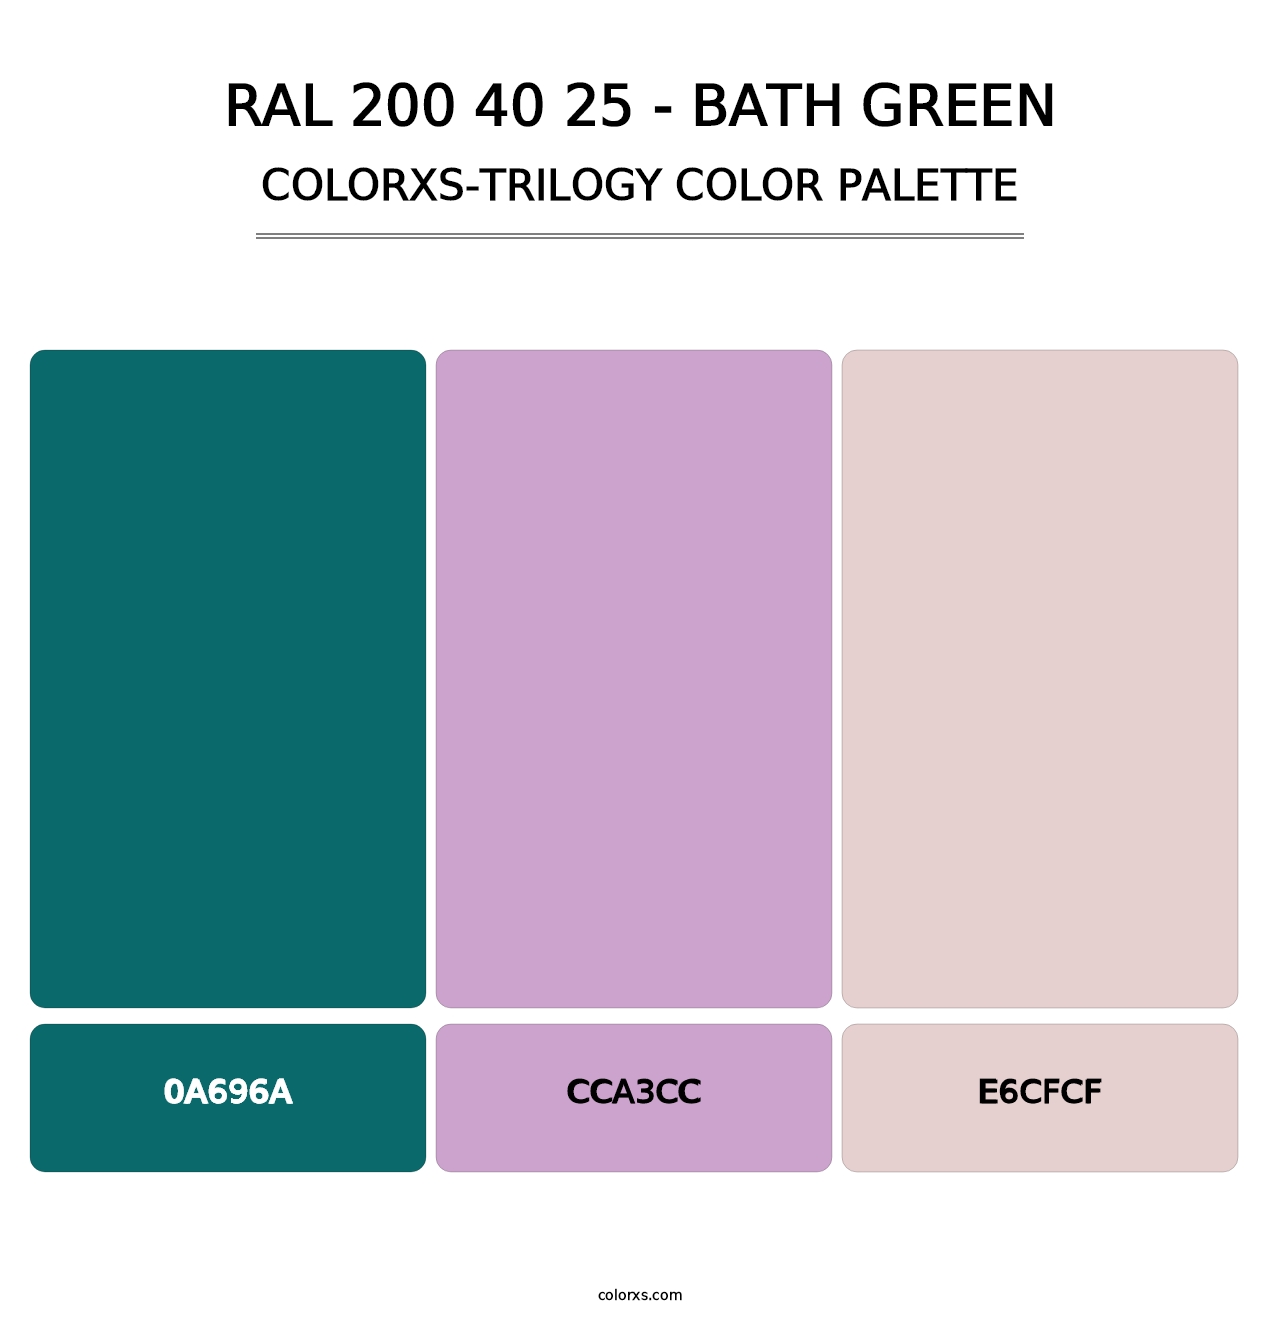 RAL 200 40 25 - Bath Green - Colorxs Trilogy Palette